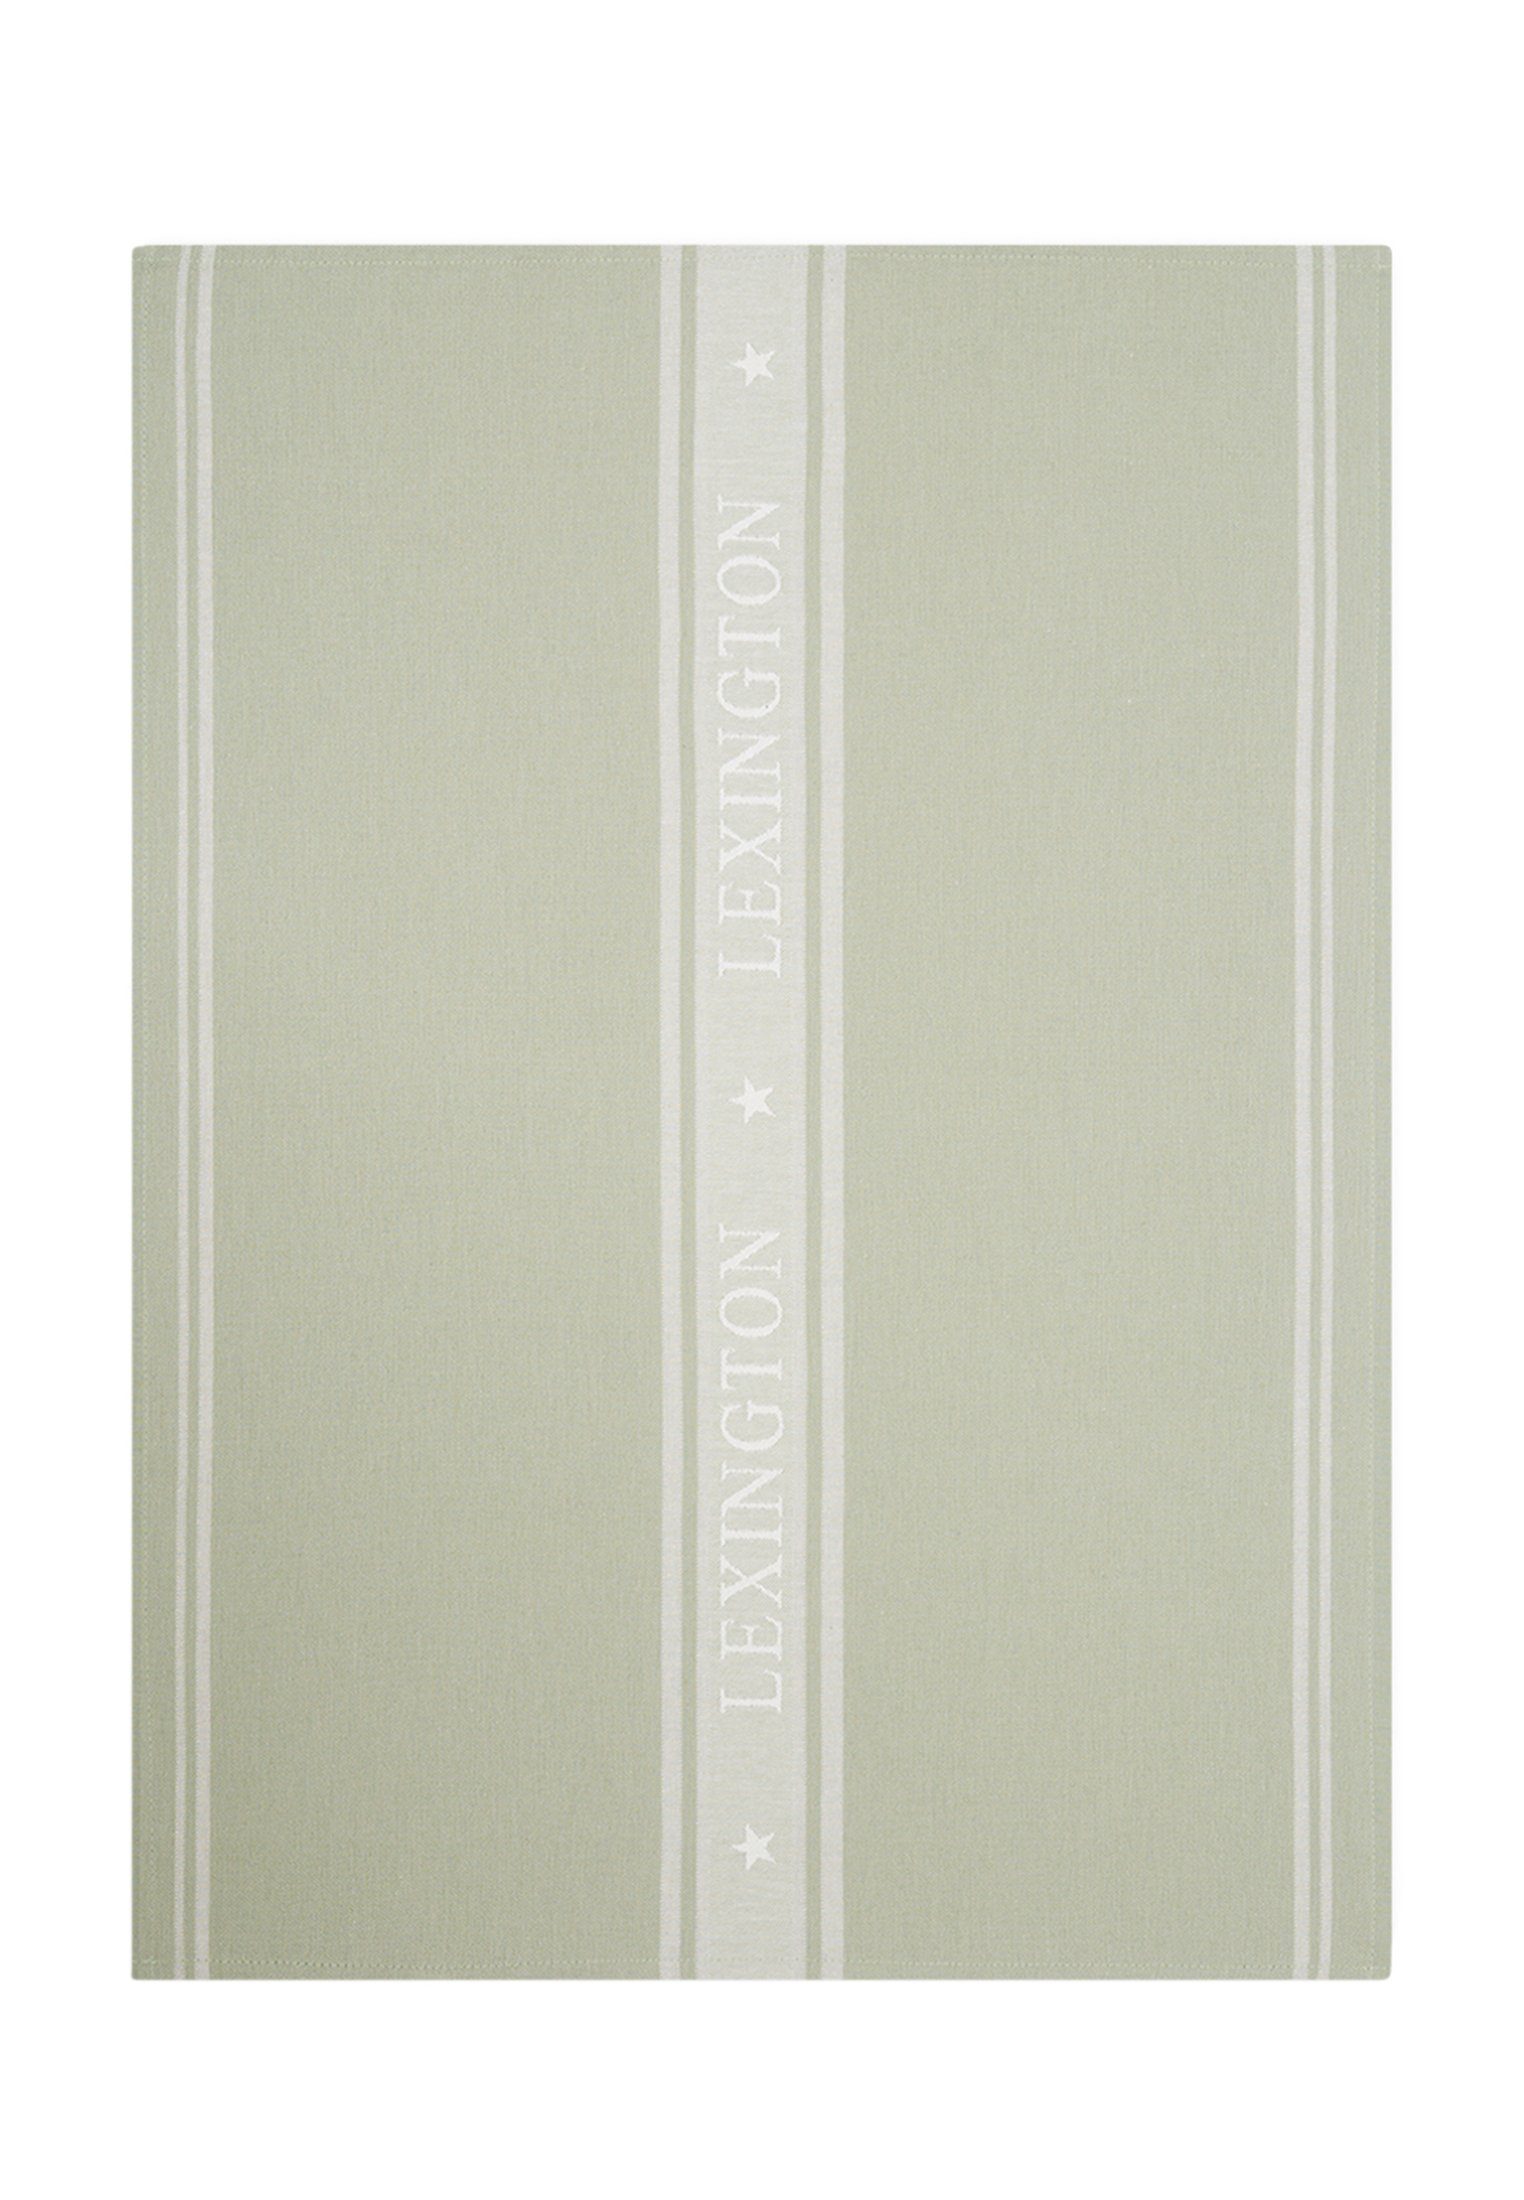 Lexington Geschirrtuch Icons Cotton Jacquard Star sage green/white | Geschirrtücher